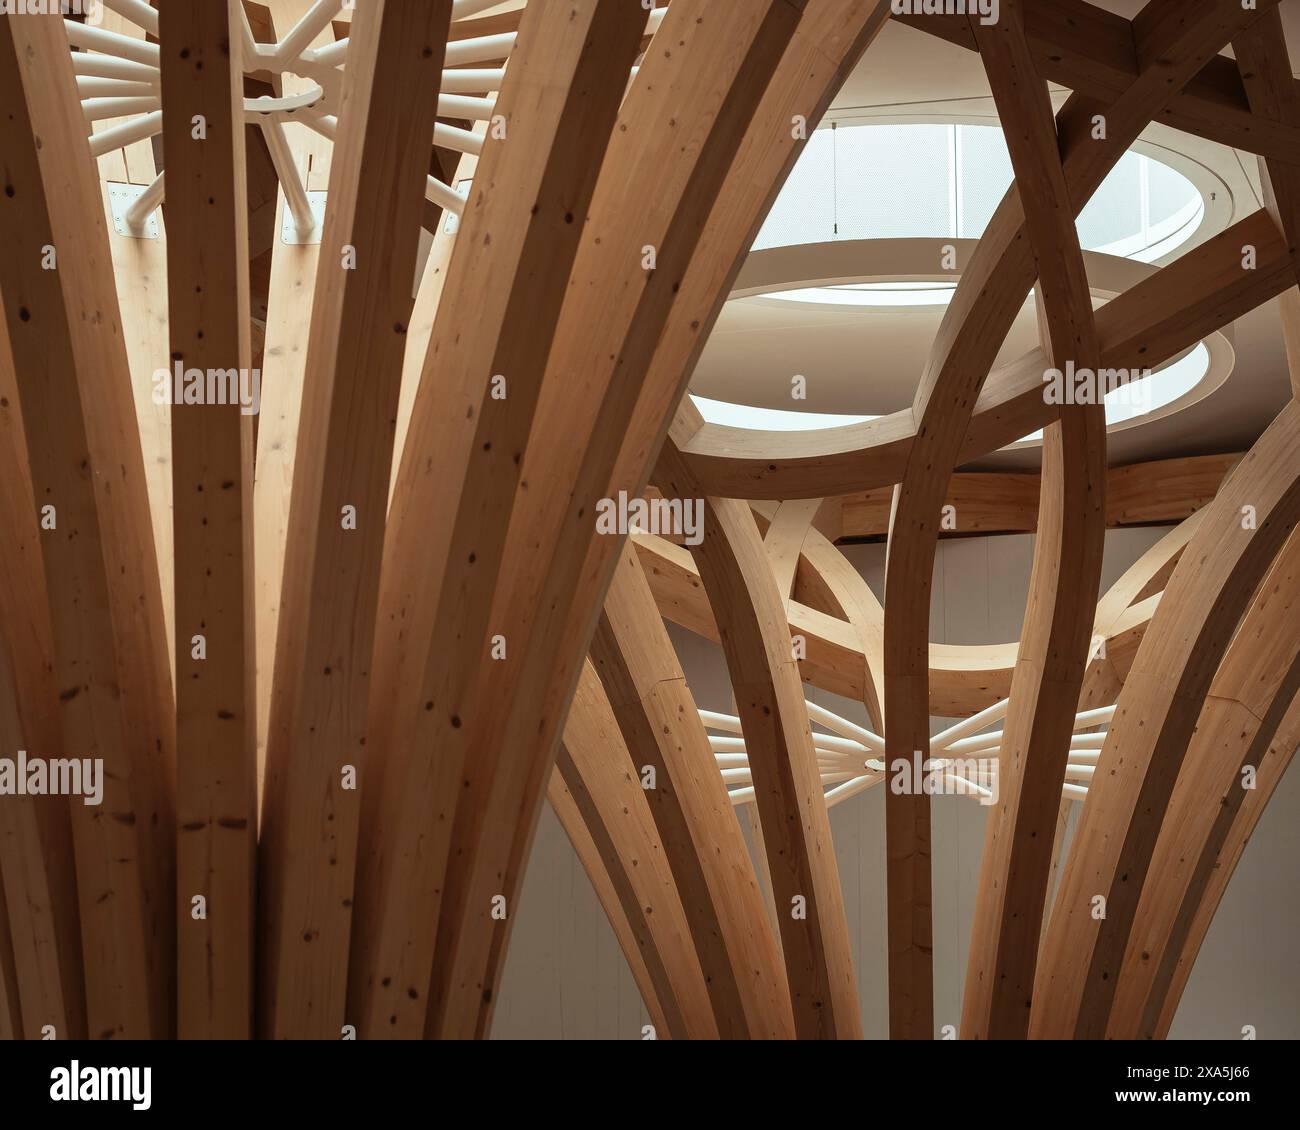 Dettagli della colonna in legno e del reticolo lavorano con il lucernario. Cambridge Mosque, Cambridge, Regno Unito. Architetto: Marks Barfield Architects, 2019. Foto Stock